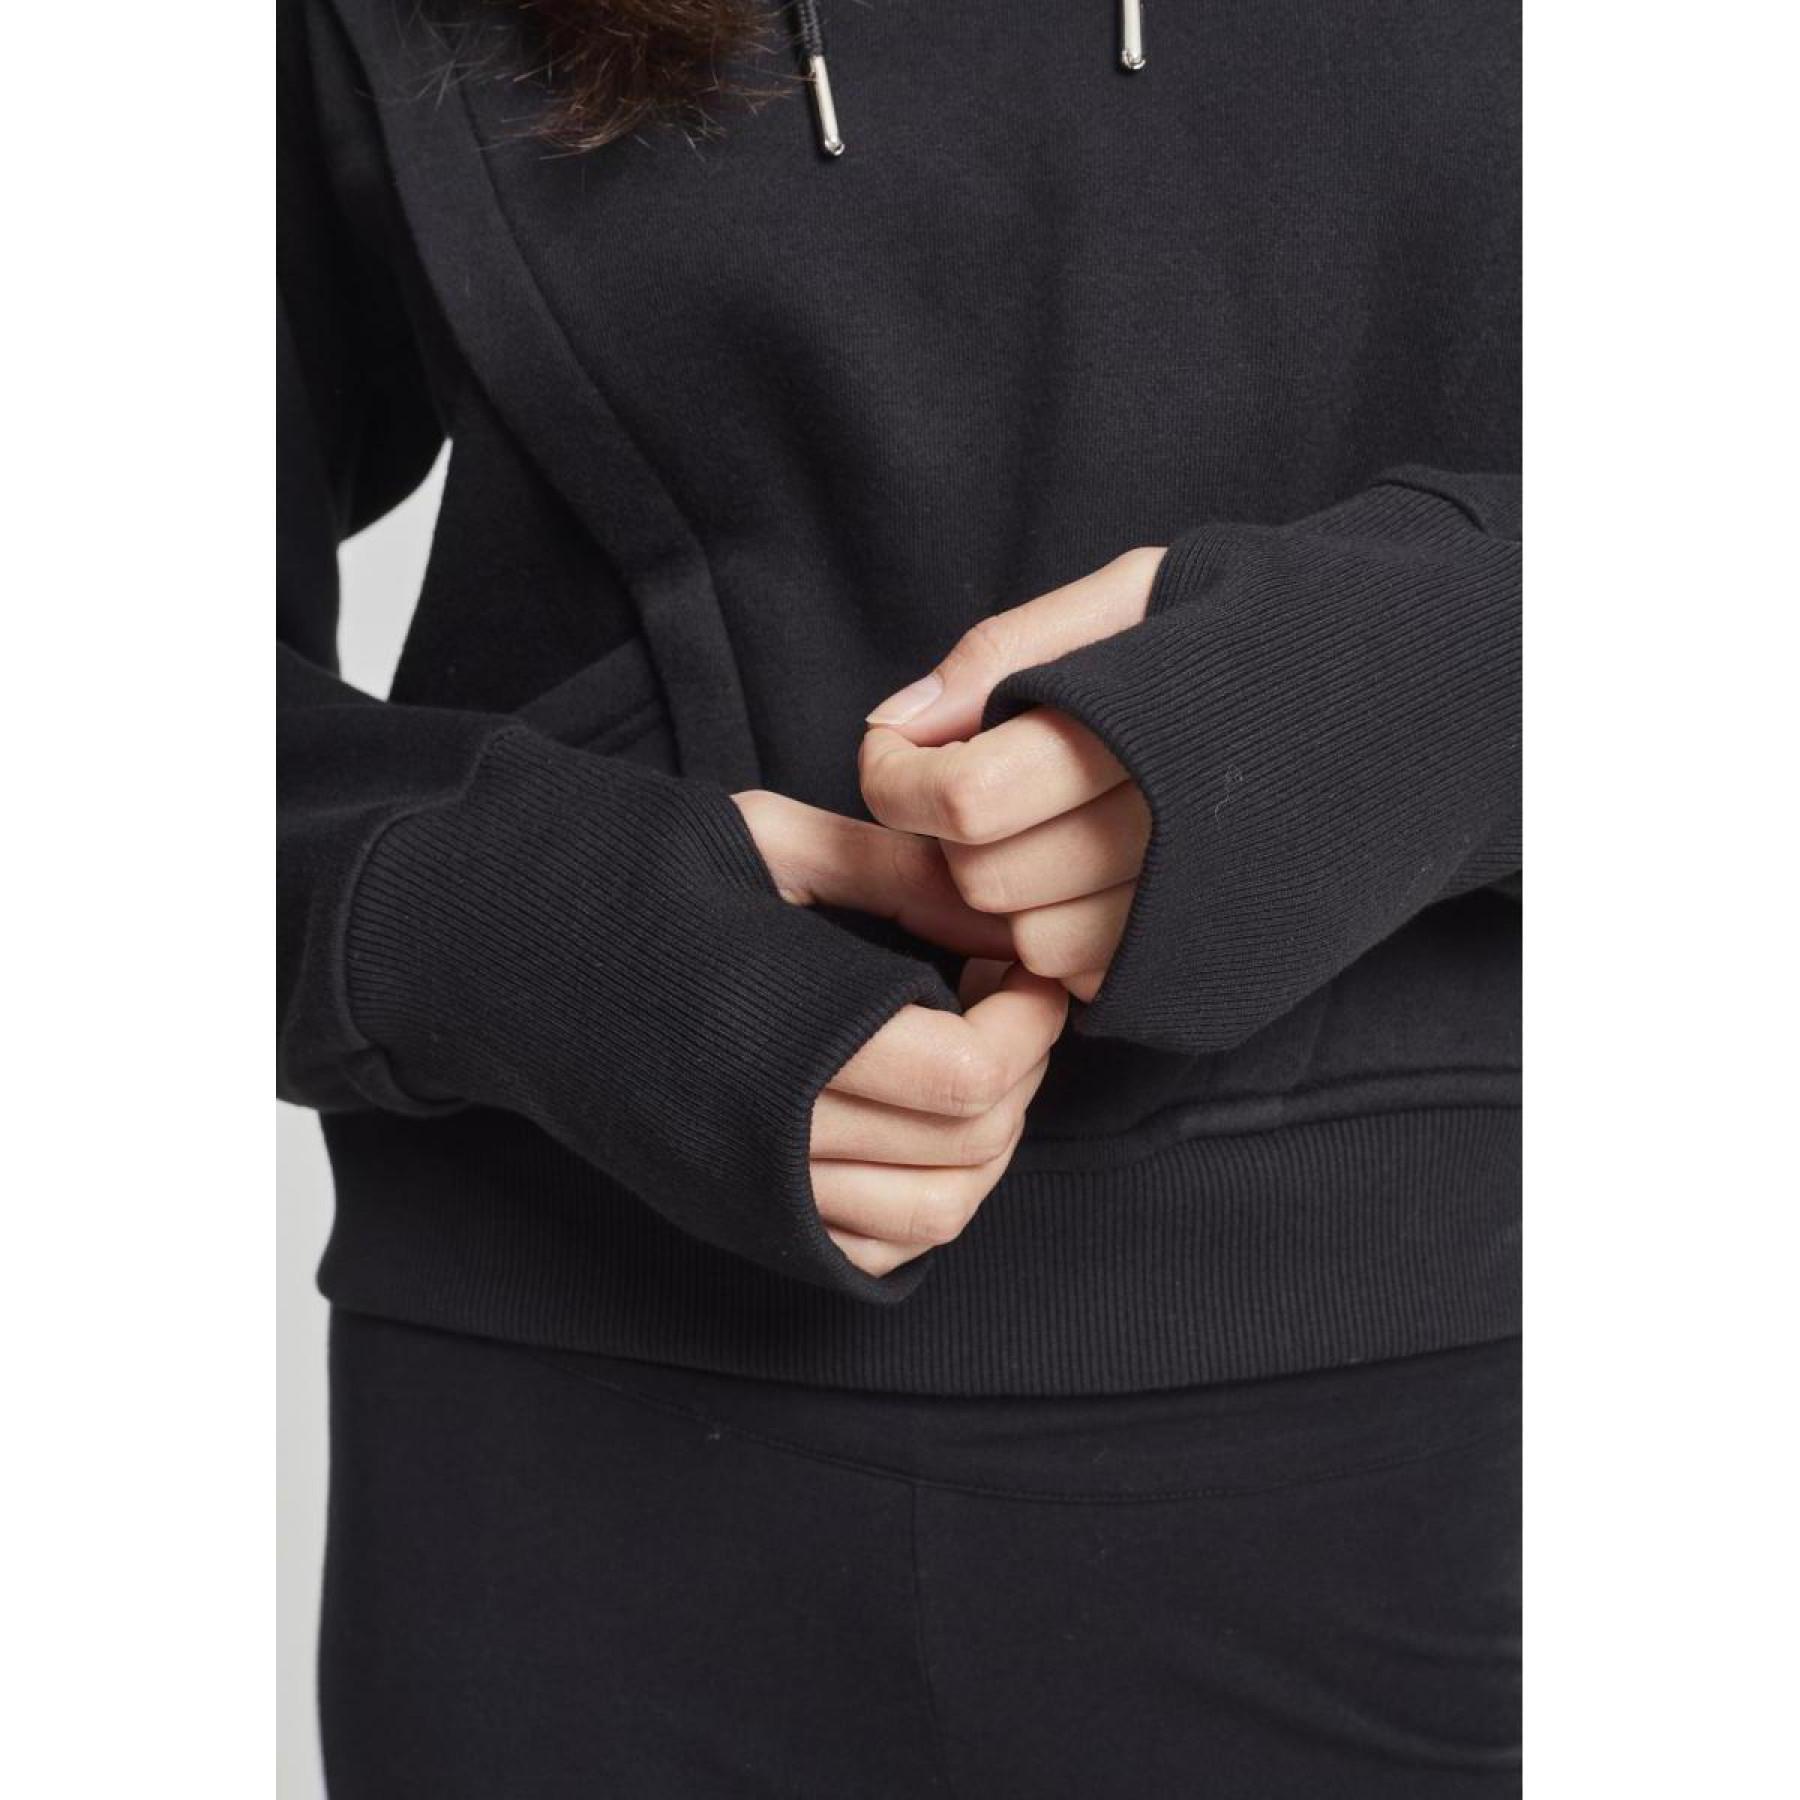 Camisola com capuz para mulher tamanhos grandes urban Classic thumb hole